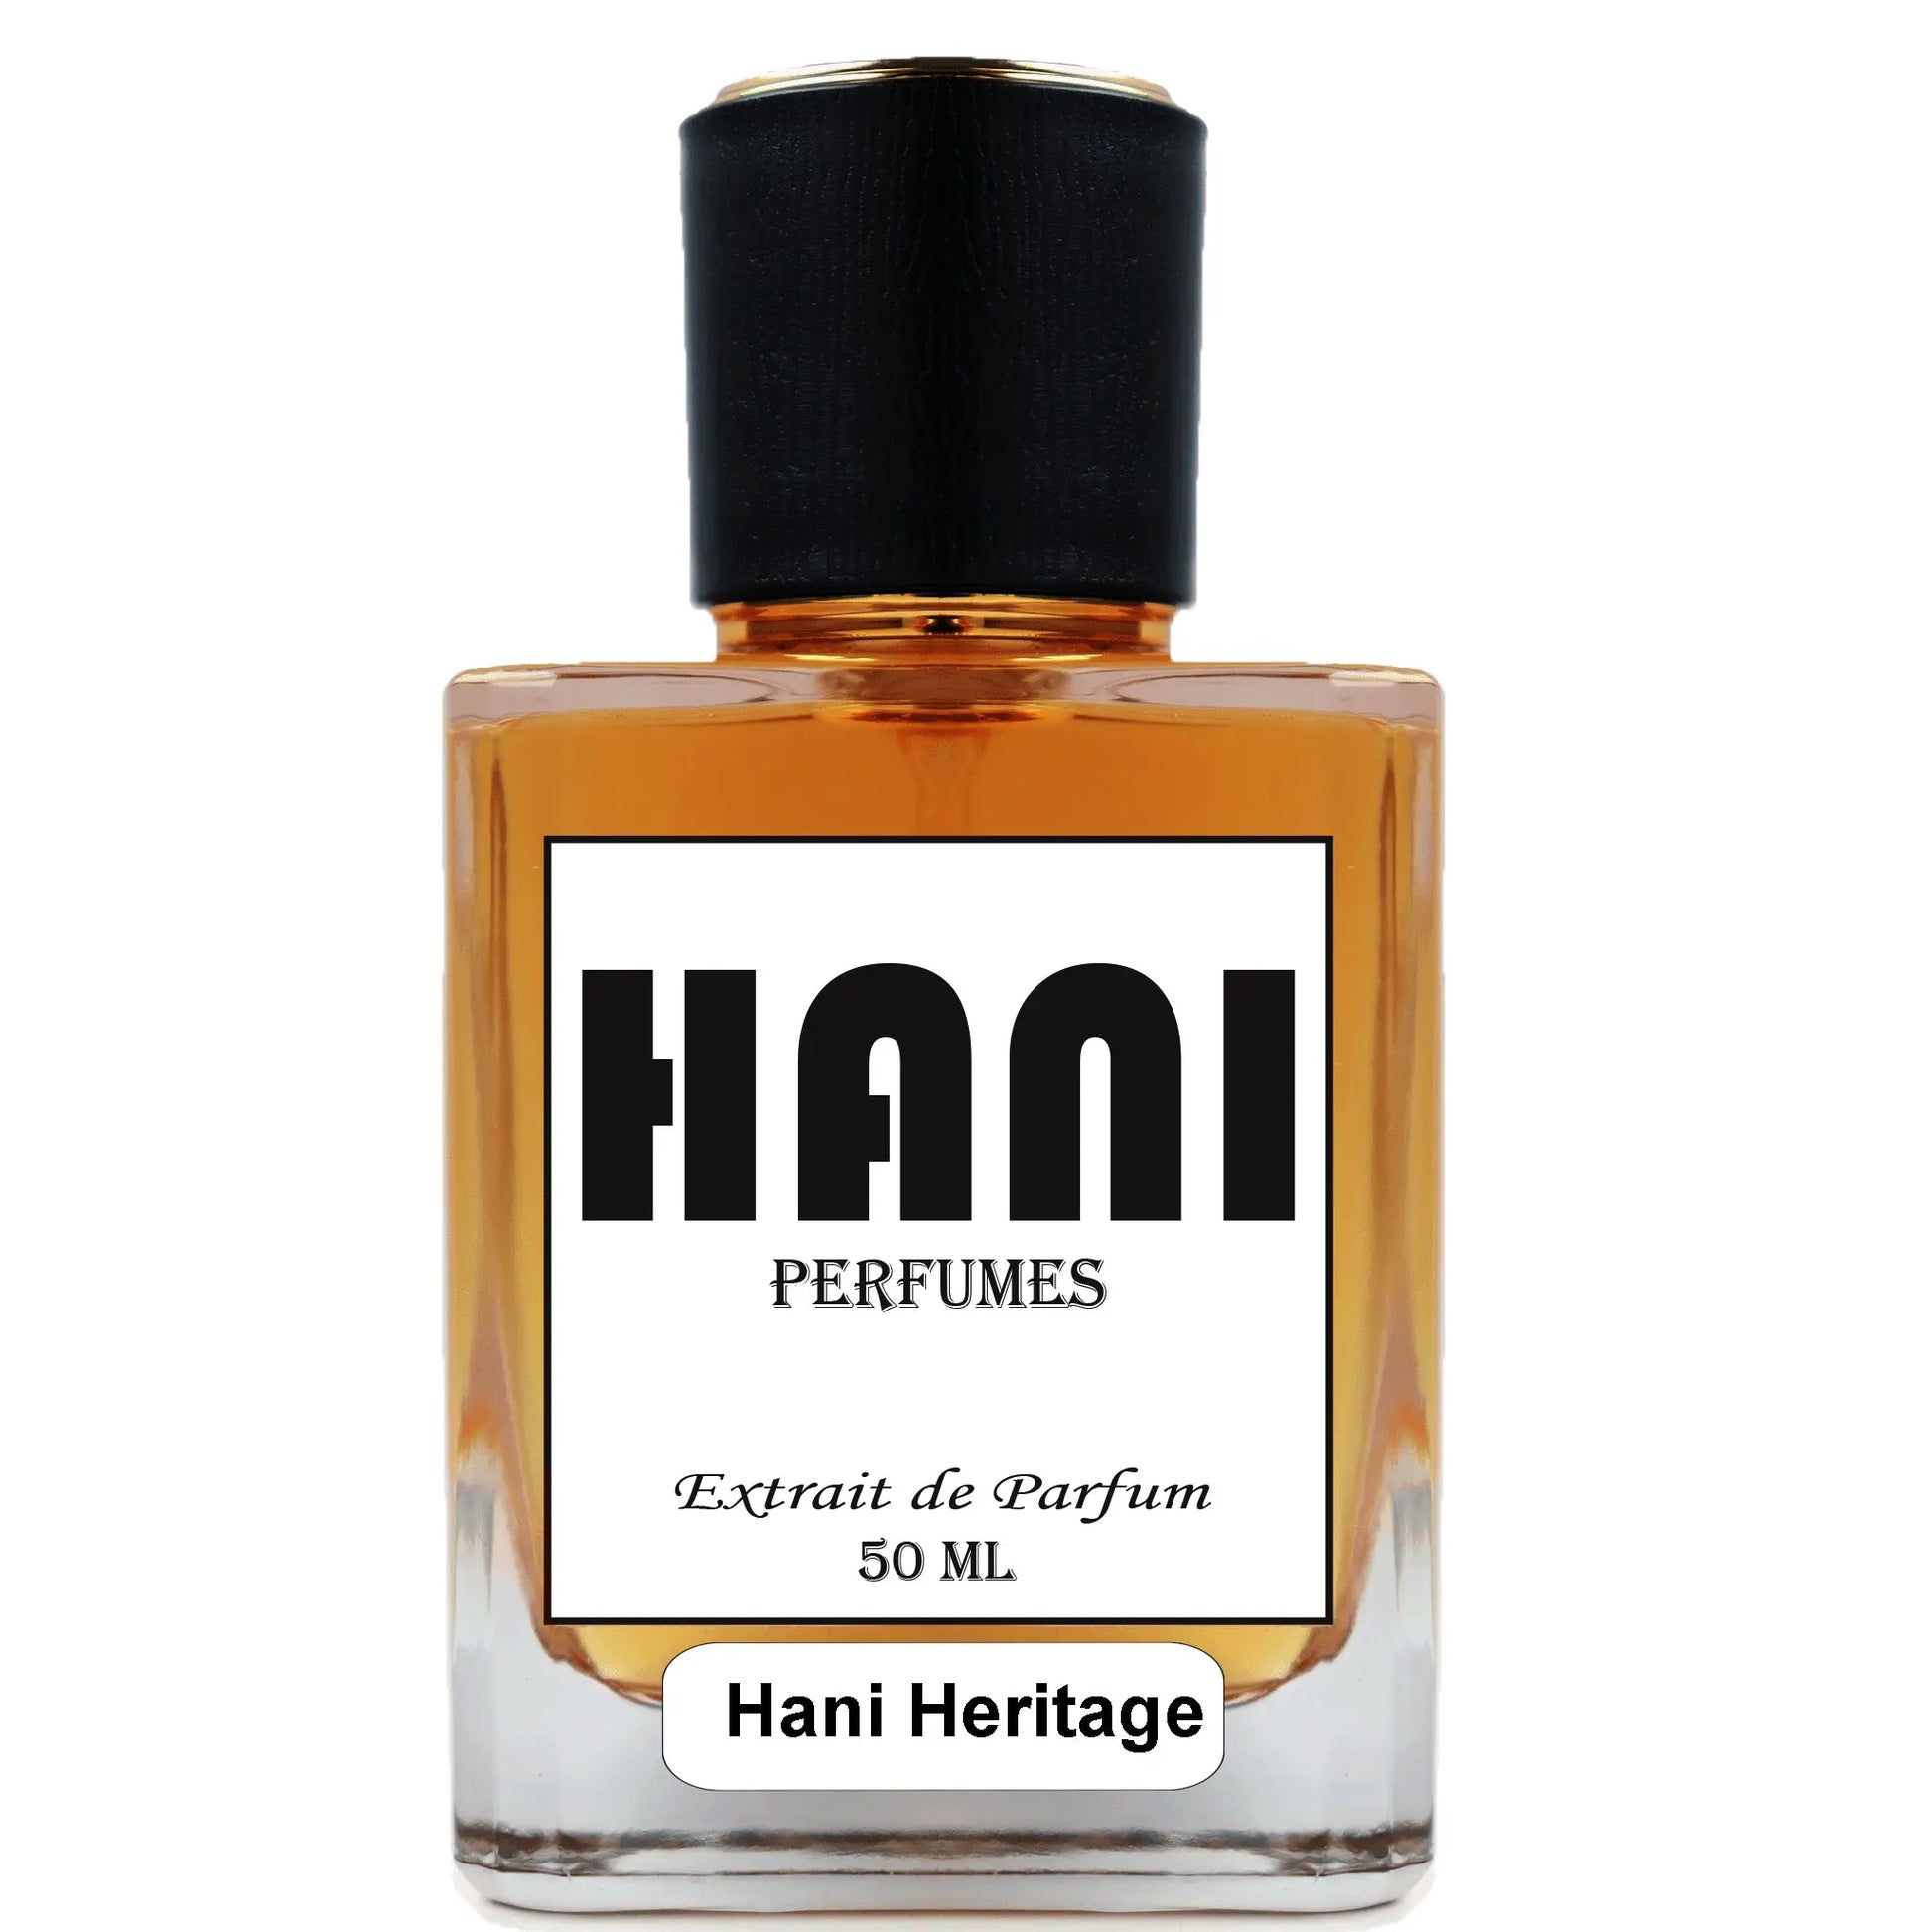 Hani Heritage Unisex Parfum duftzwillinge parfum dupe duftzwilling